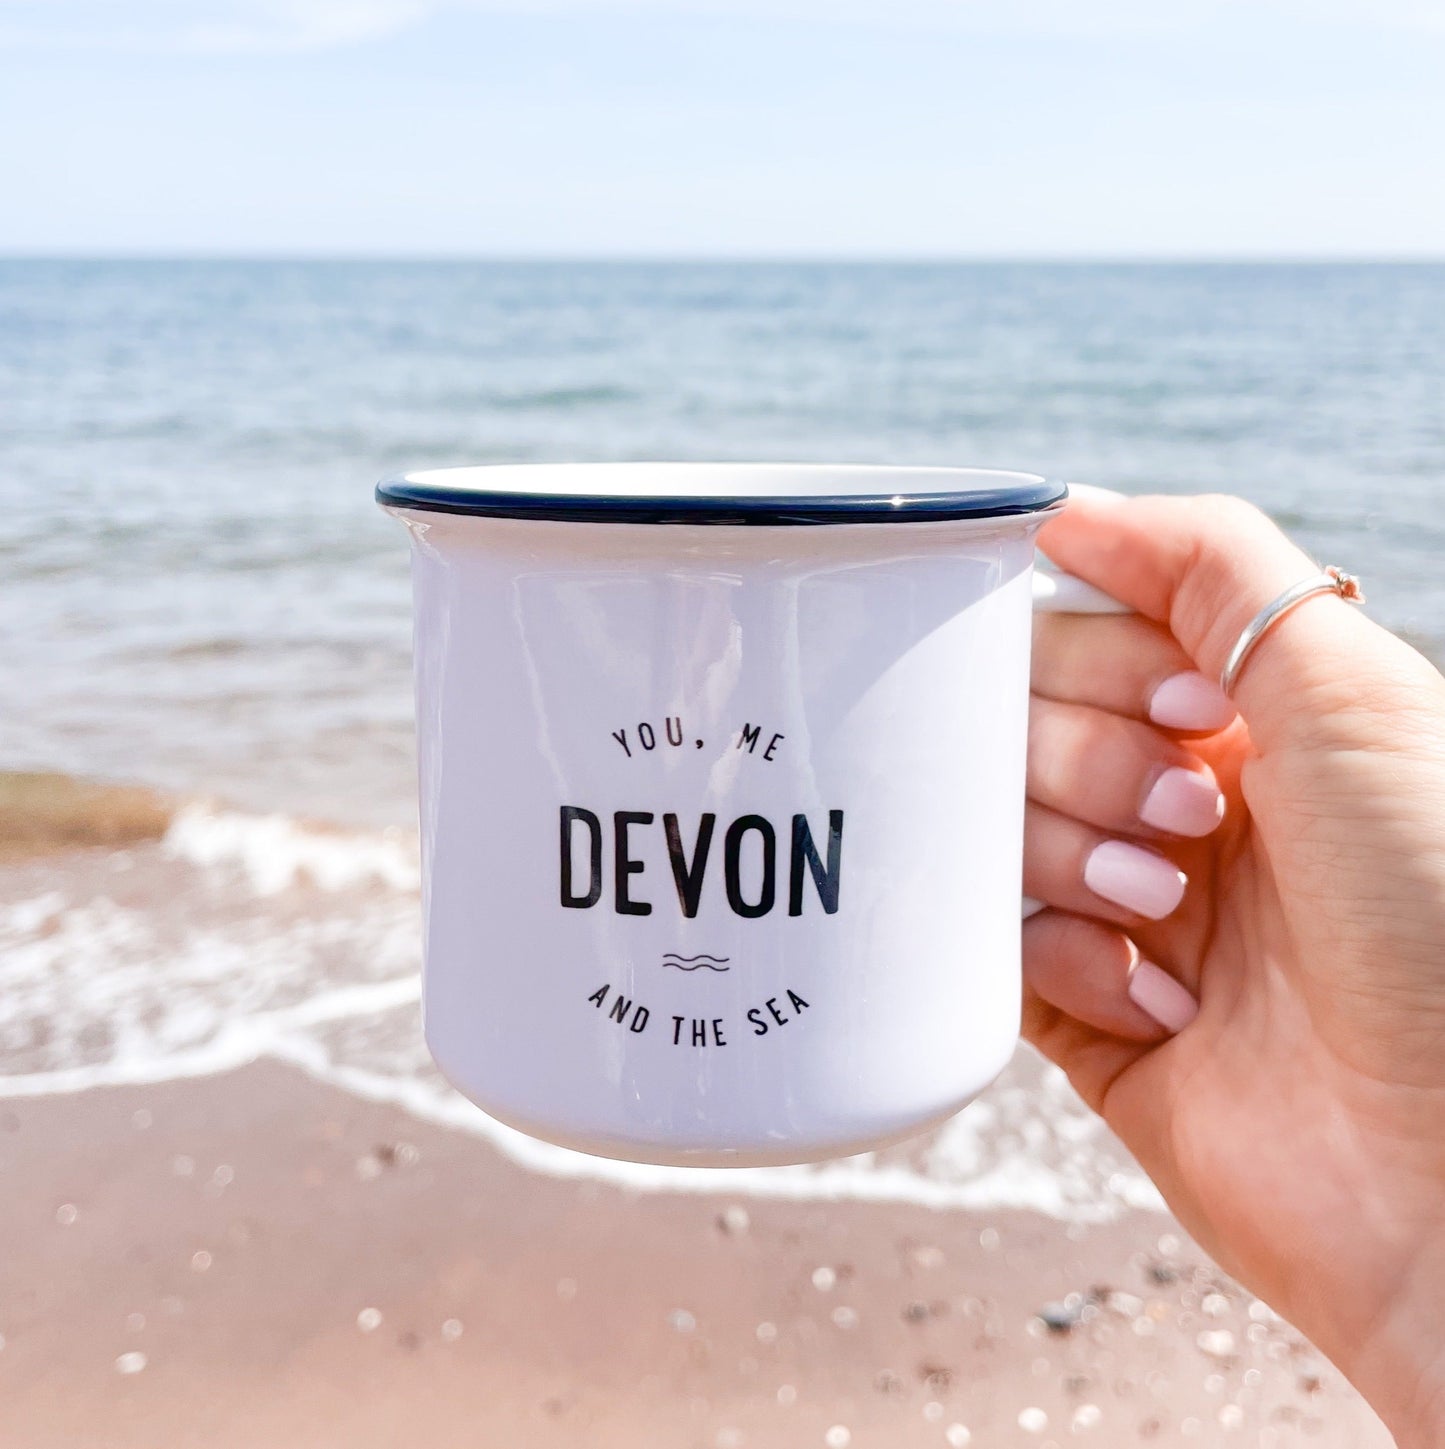 'You, Me, Devon and the Sea' Ceramic Mug